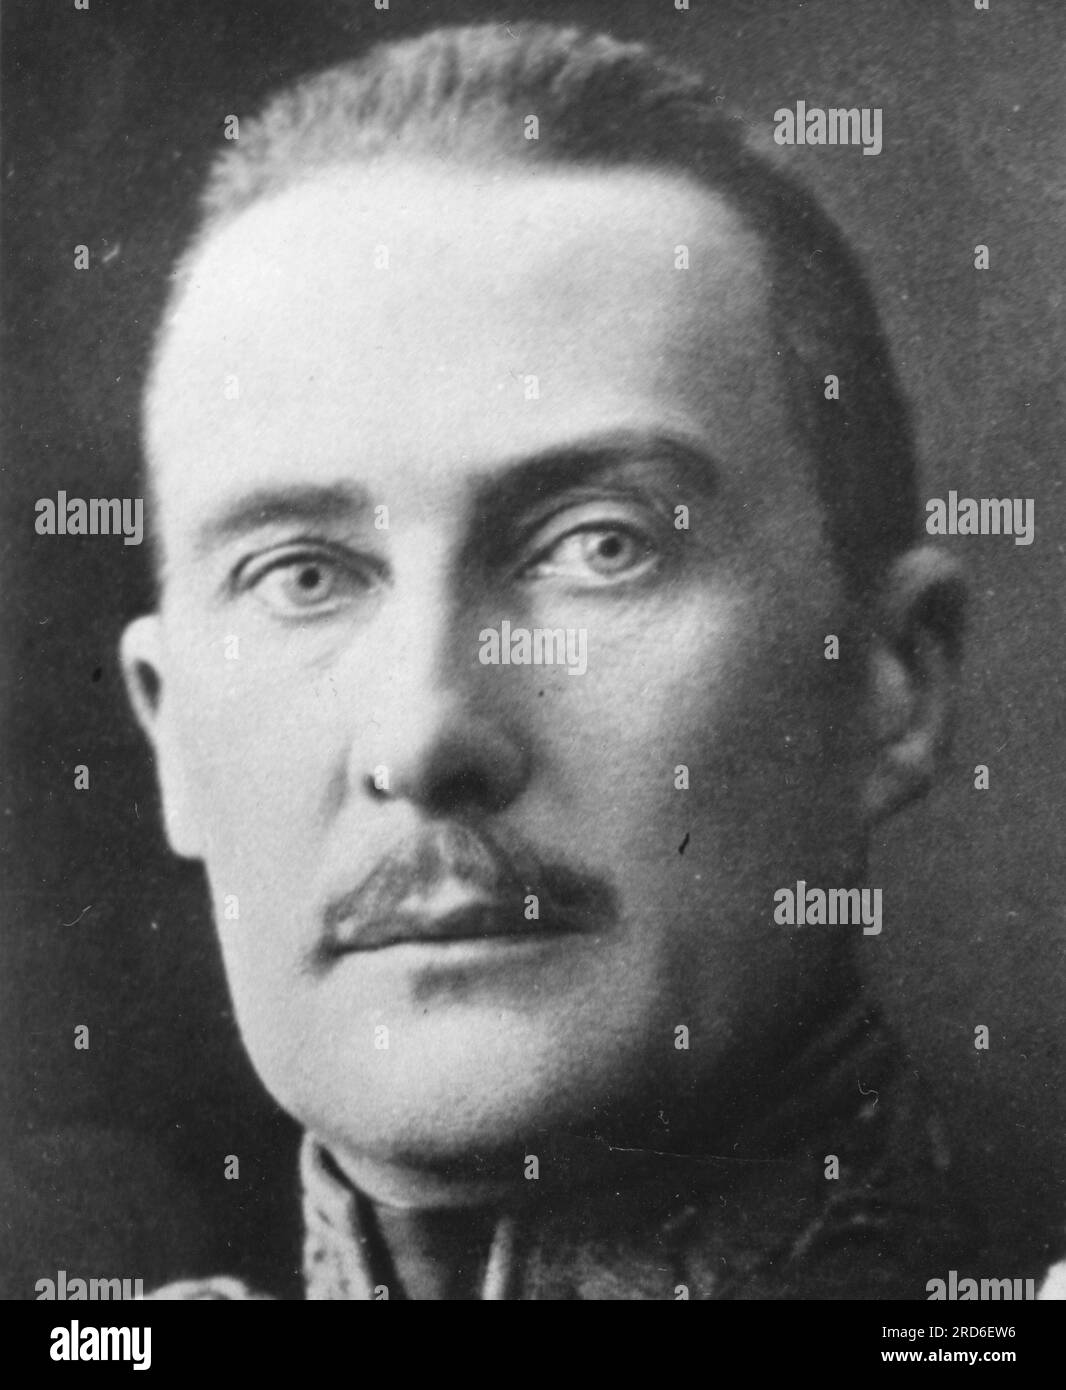 Albrecht, 23.12.1865 - 29.10.1939, Herzog von Württemberg, deutscher General, ZUSÄTZLICHE-RECHTE-FREIGABE-INFO-NICHT-VERFÜGBAR Stockfoto